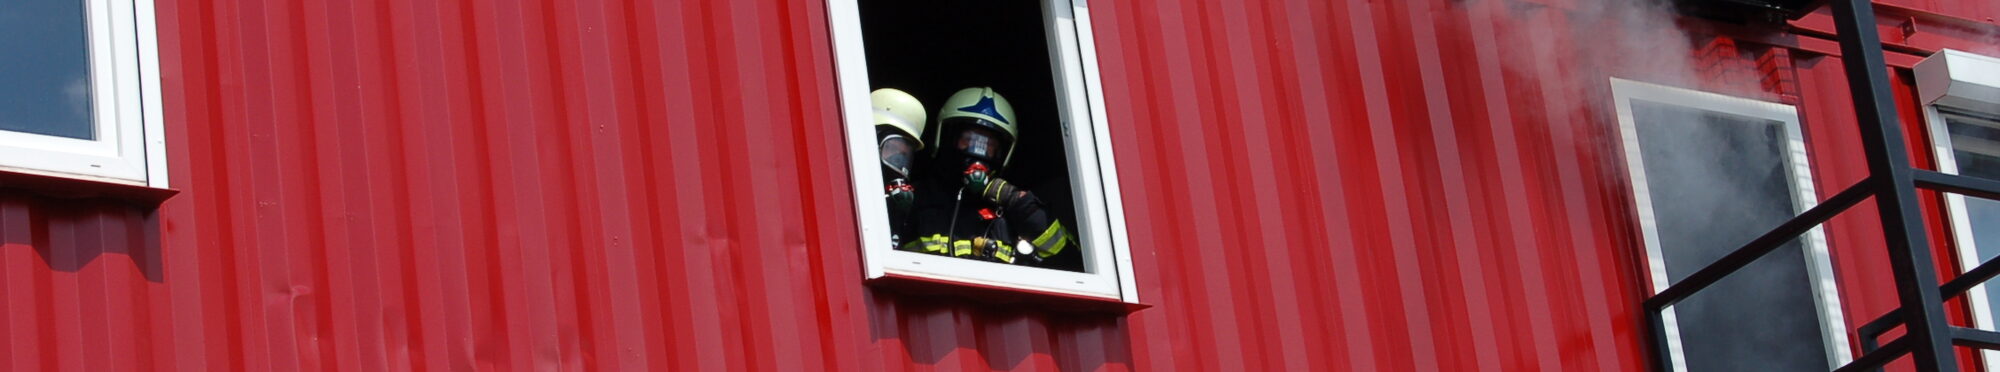 Zwei Feuerwehrleute erscheinen in einem Hausfenster.